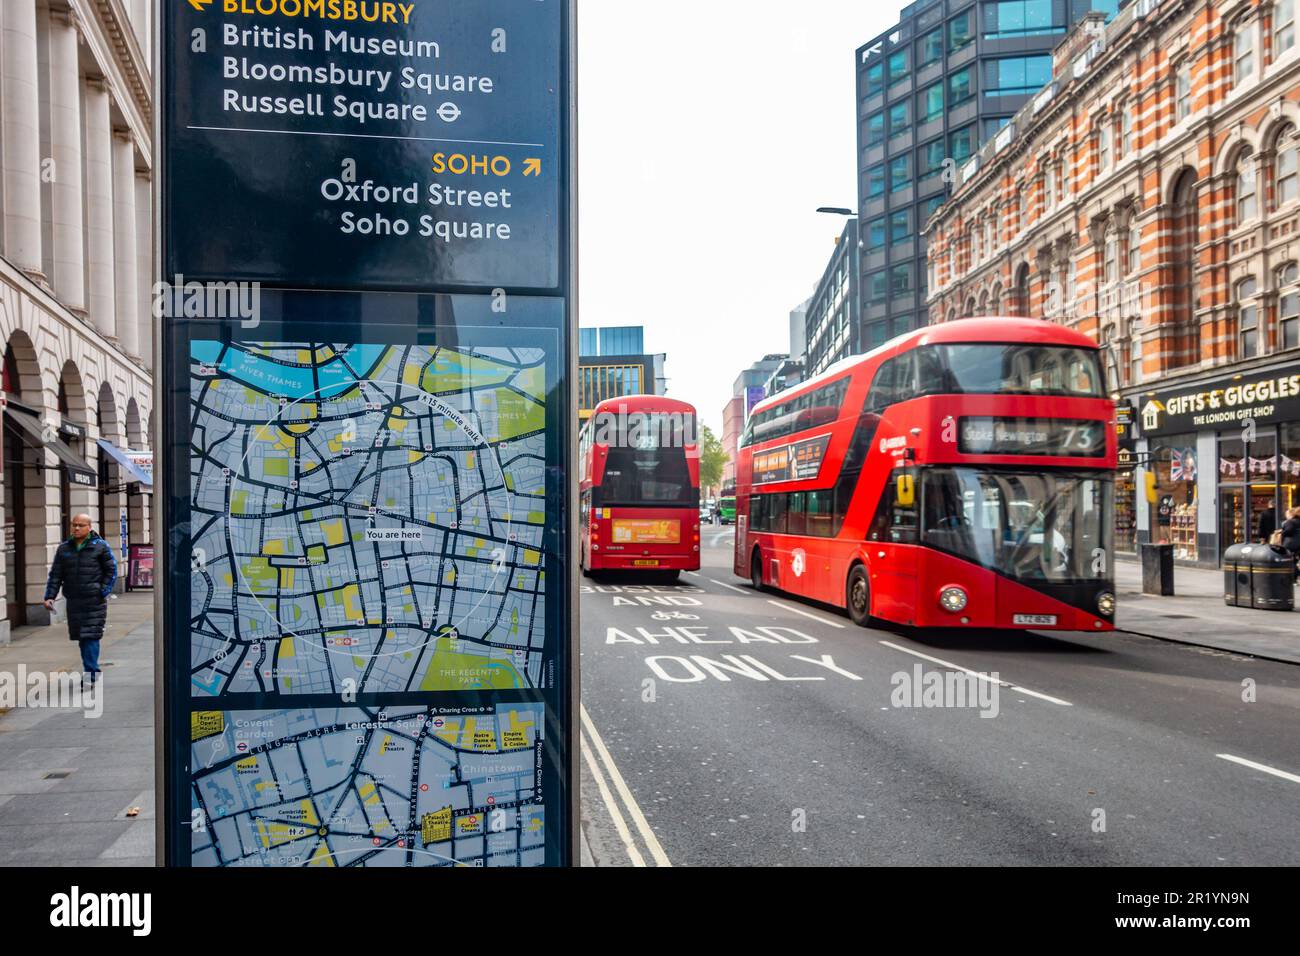 Bus londoniens à impériale rouge emblématique vus sur Tottenham court Road. Un panneau avec des cartes donne des indications pour les touristes, Banque D'Images